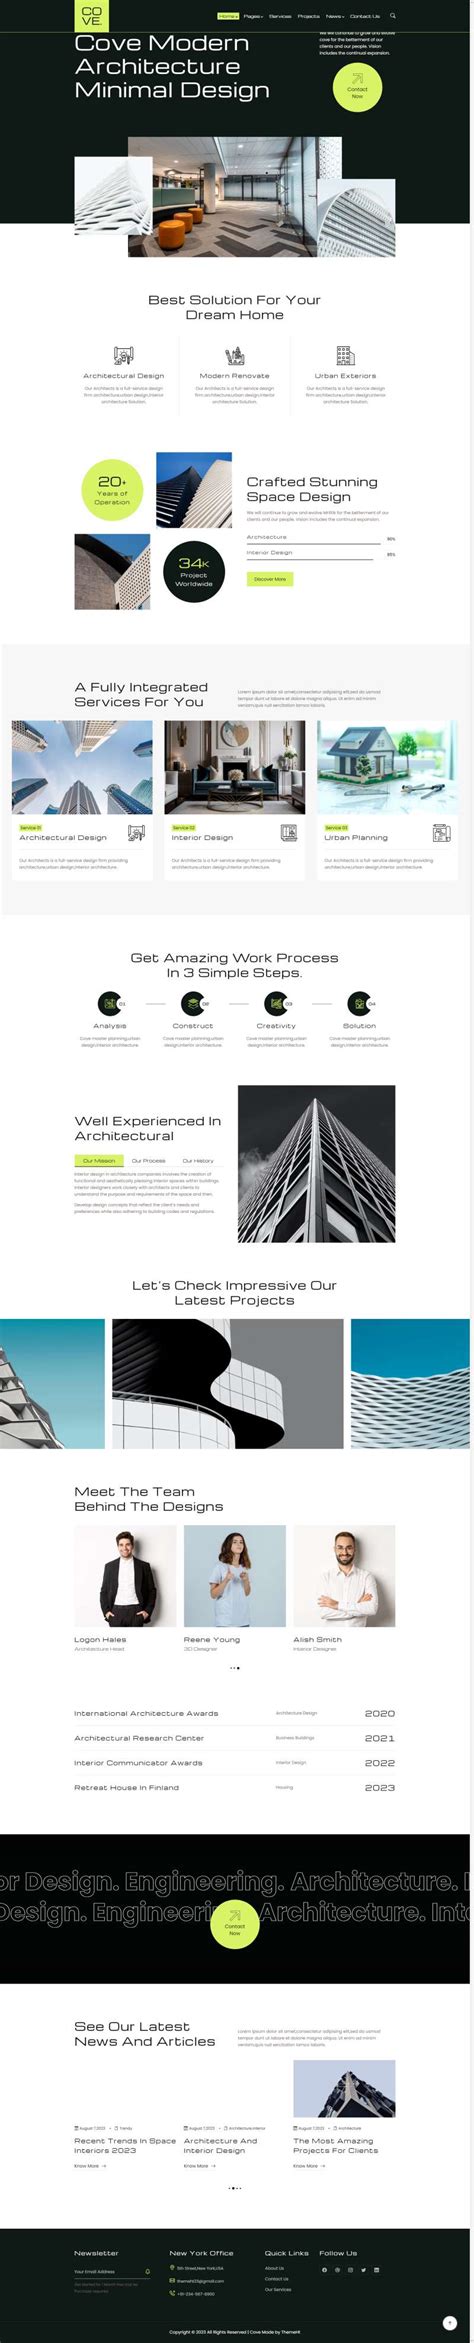 黑色的html5+css3网页设计公司产品展示网页模板